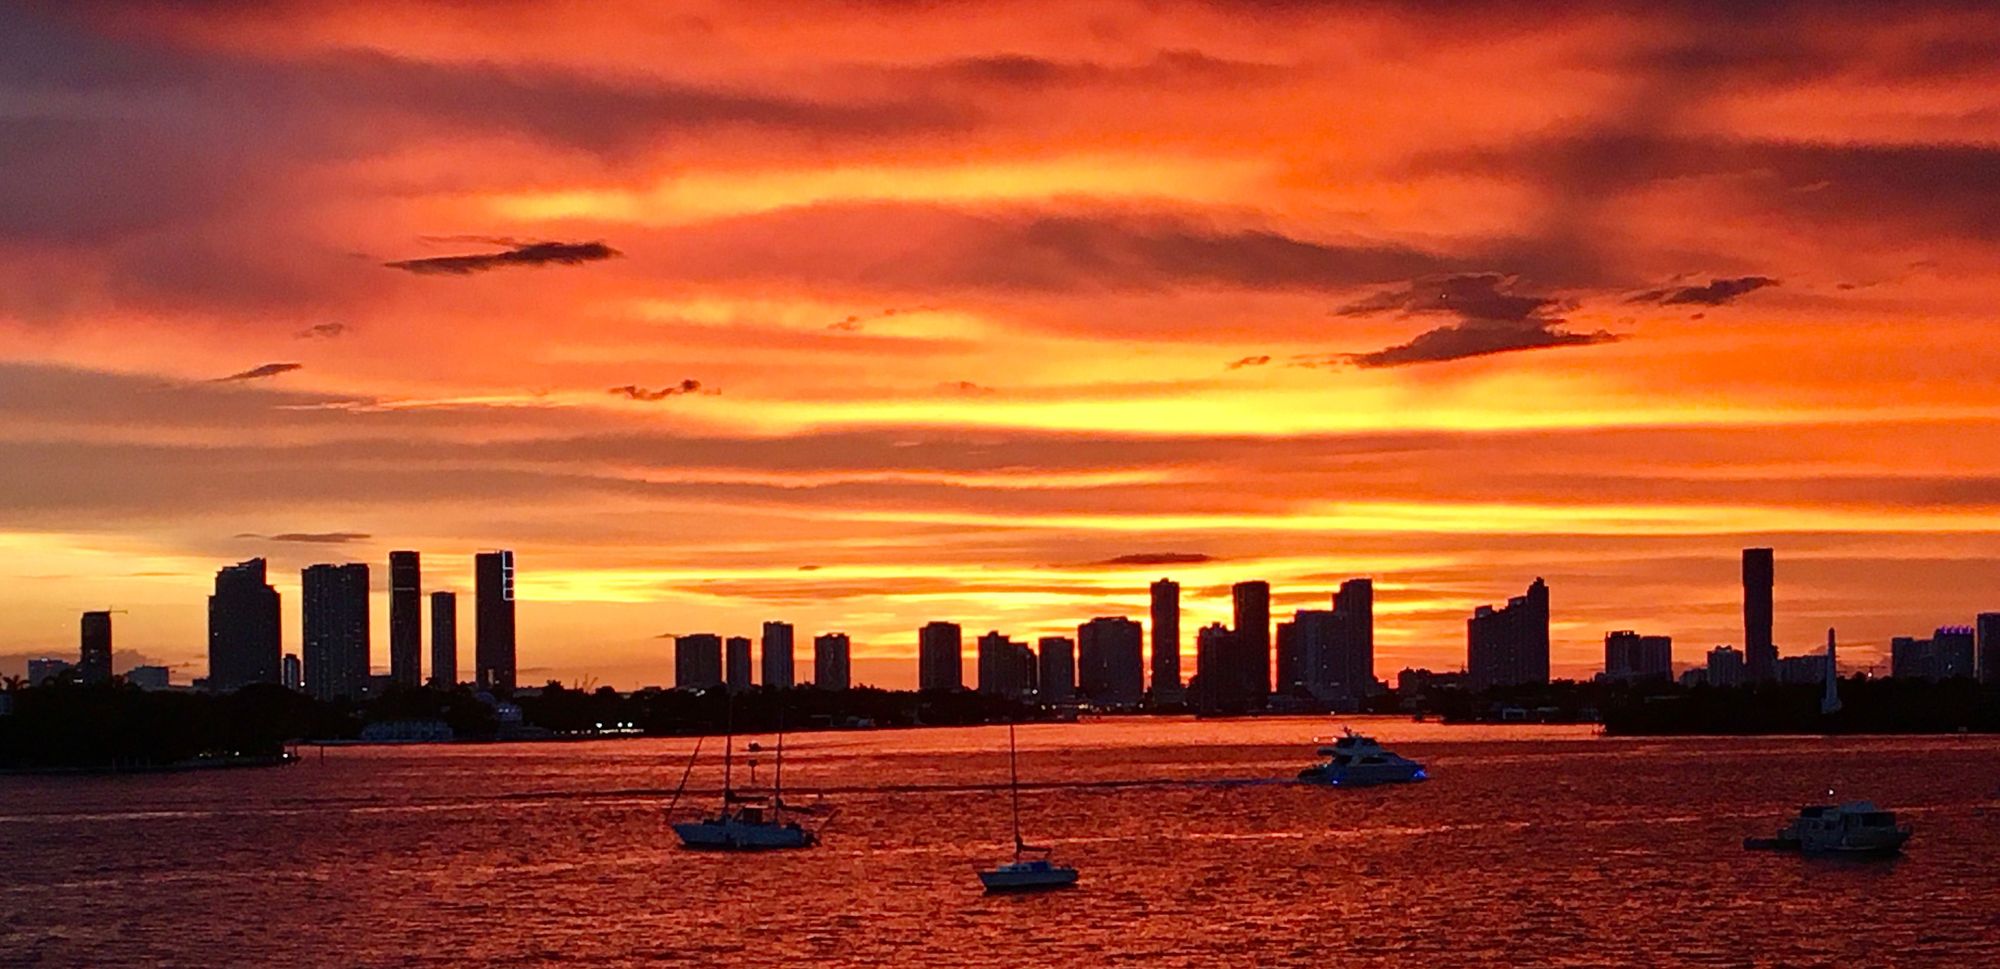 Miami Sunset